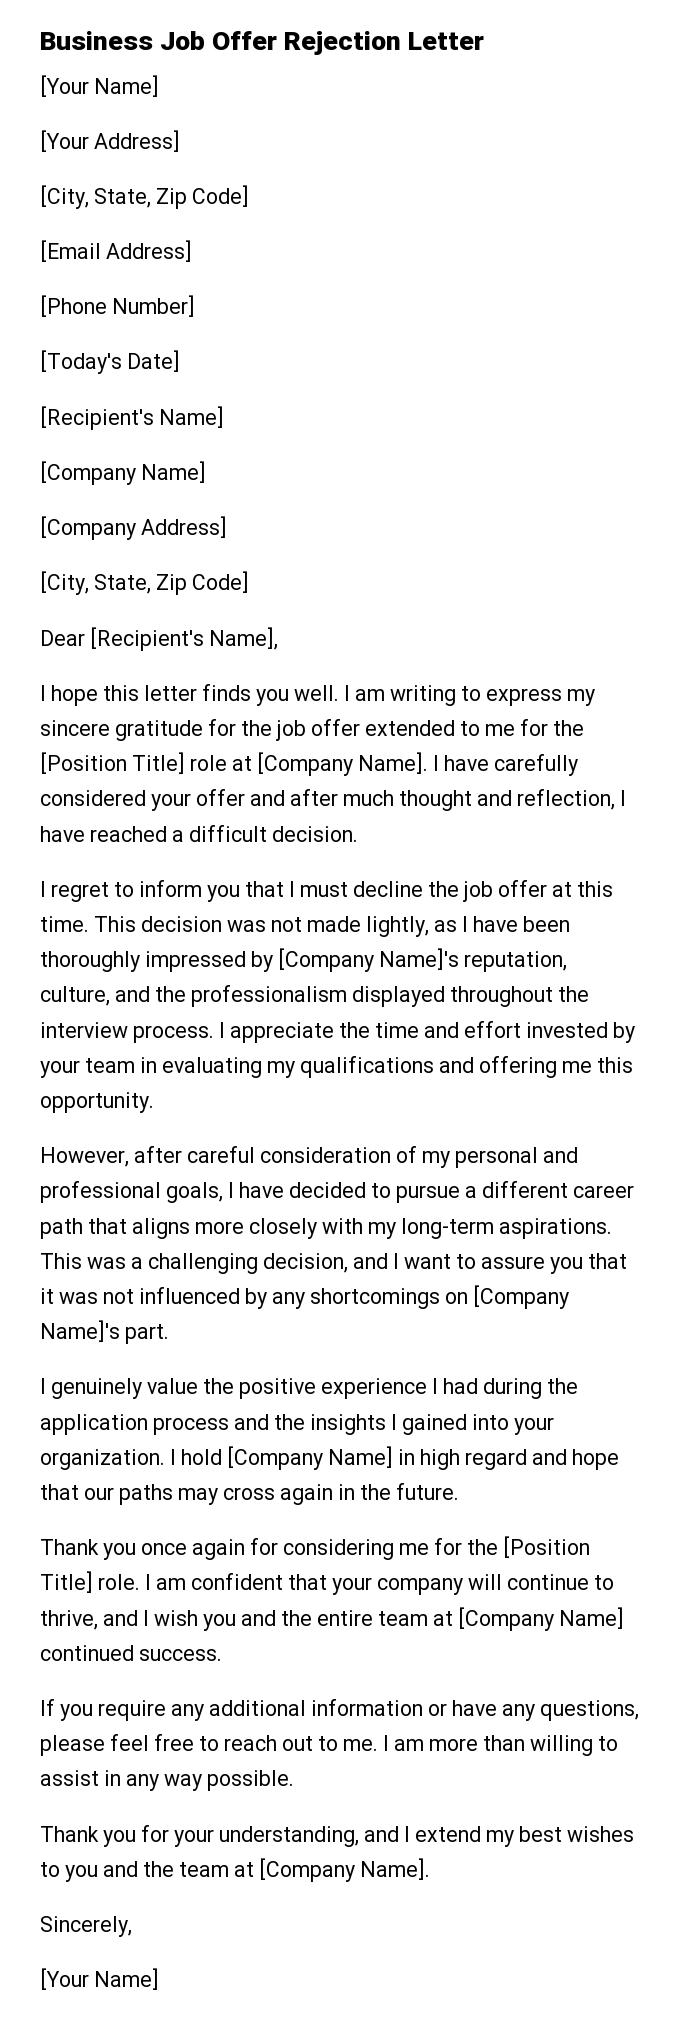 Business Job Offer Rejection Letter